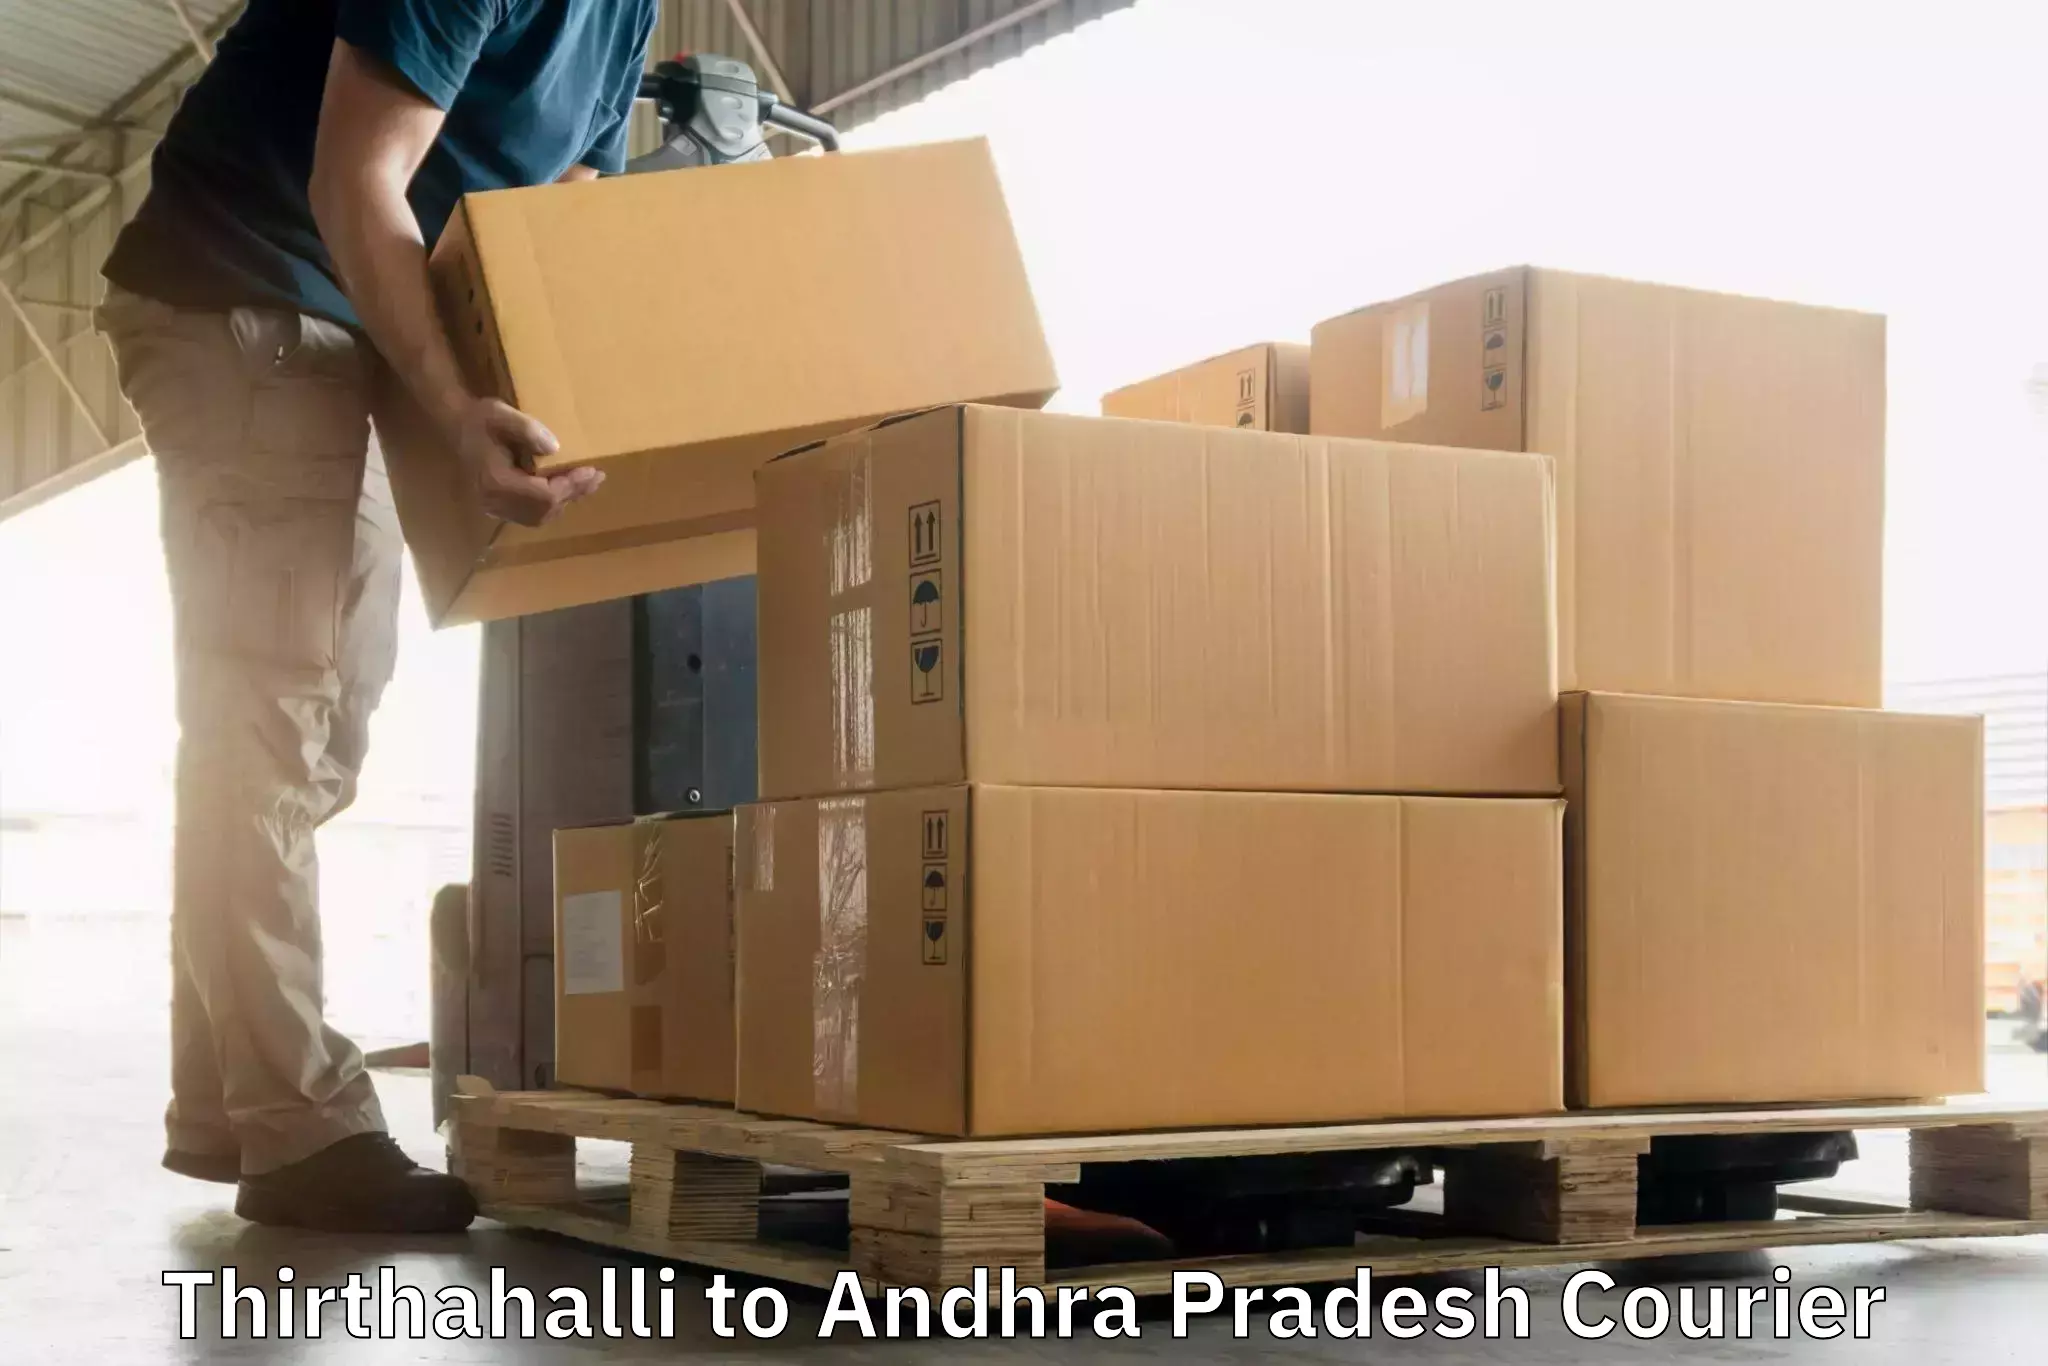 High-speed parcel service Thirthahalli to Vuyyuru